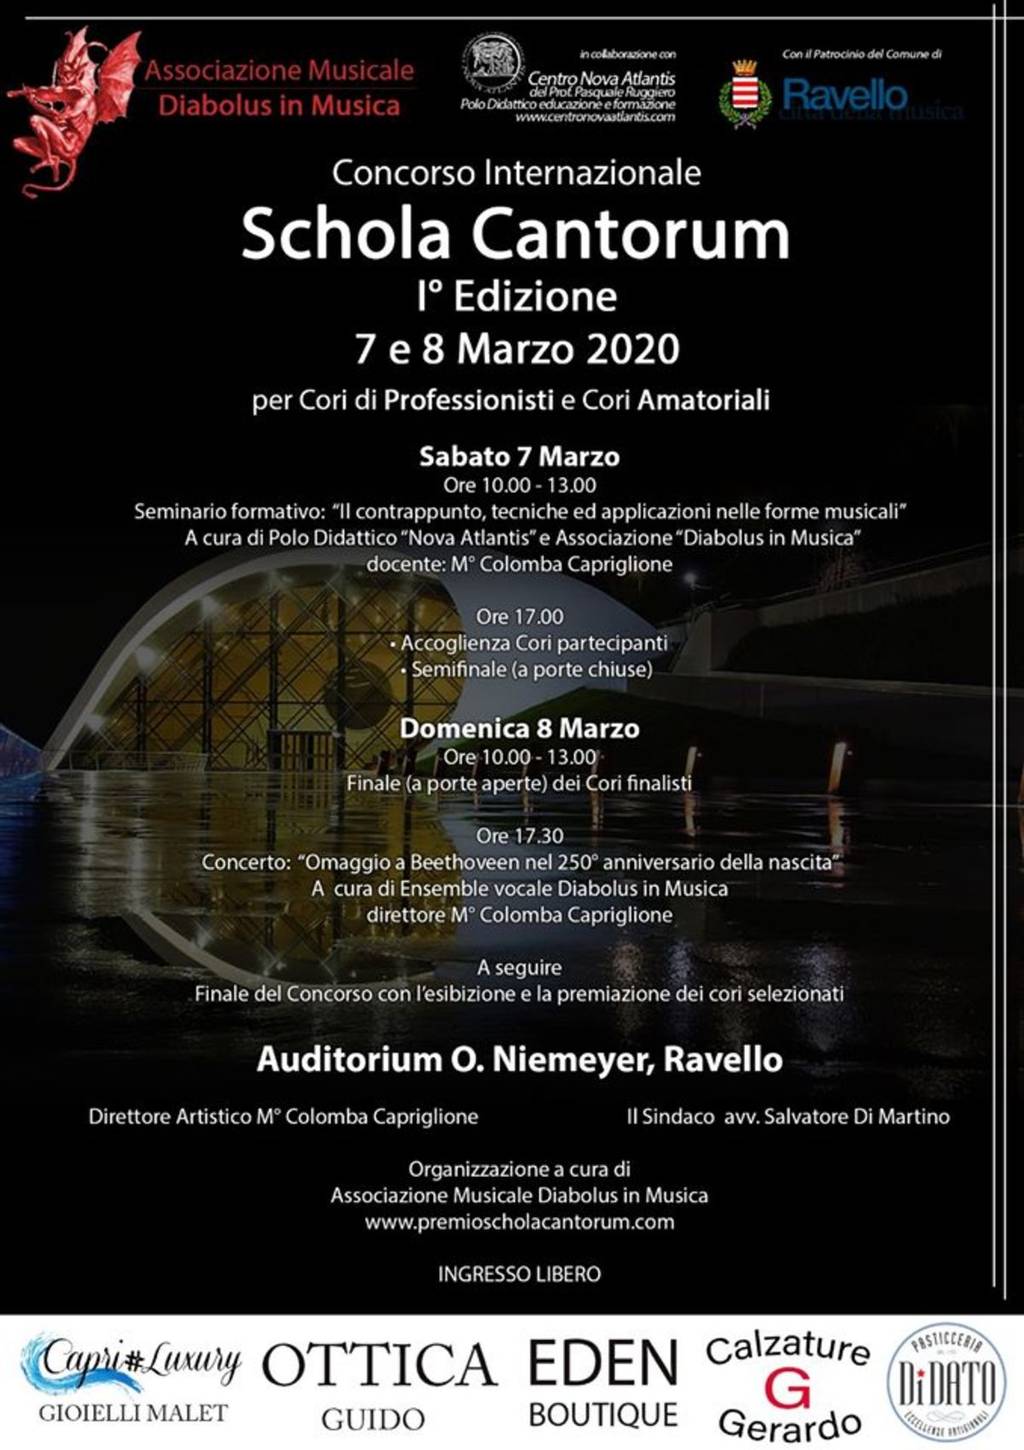 Concorso Internazionale Schola Cantorum